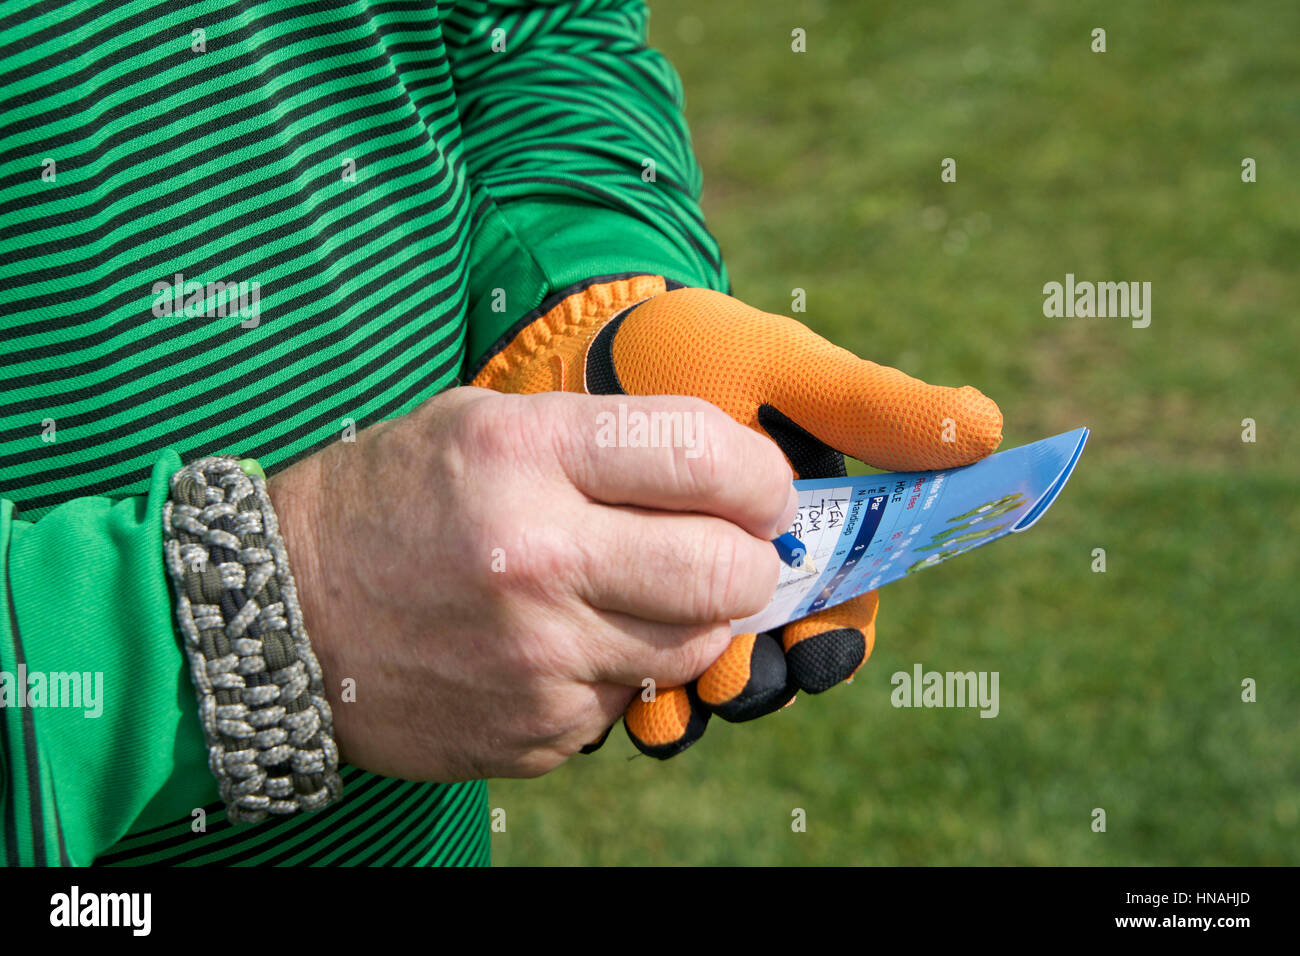 Maschio con mano golf score card tenere il punteggio a scrivere il punteggio con erba verde del campo da golf in background. Indossare un braccialetto di sopravvivenza. Foto Stock